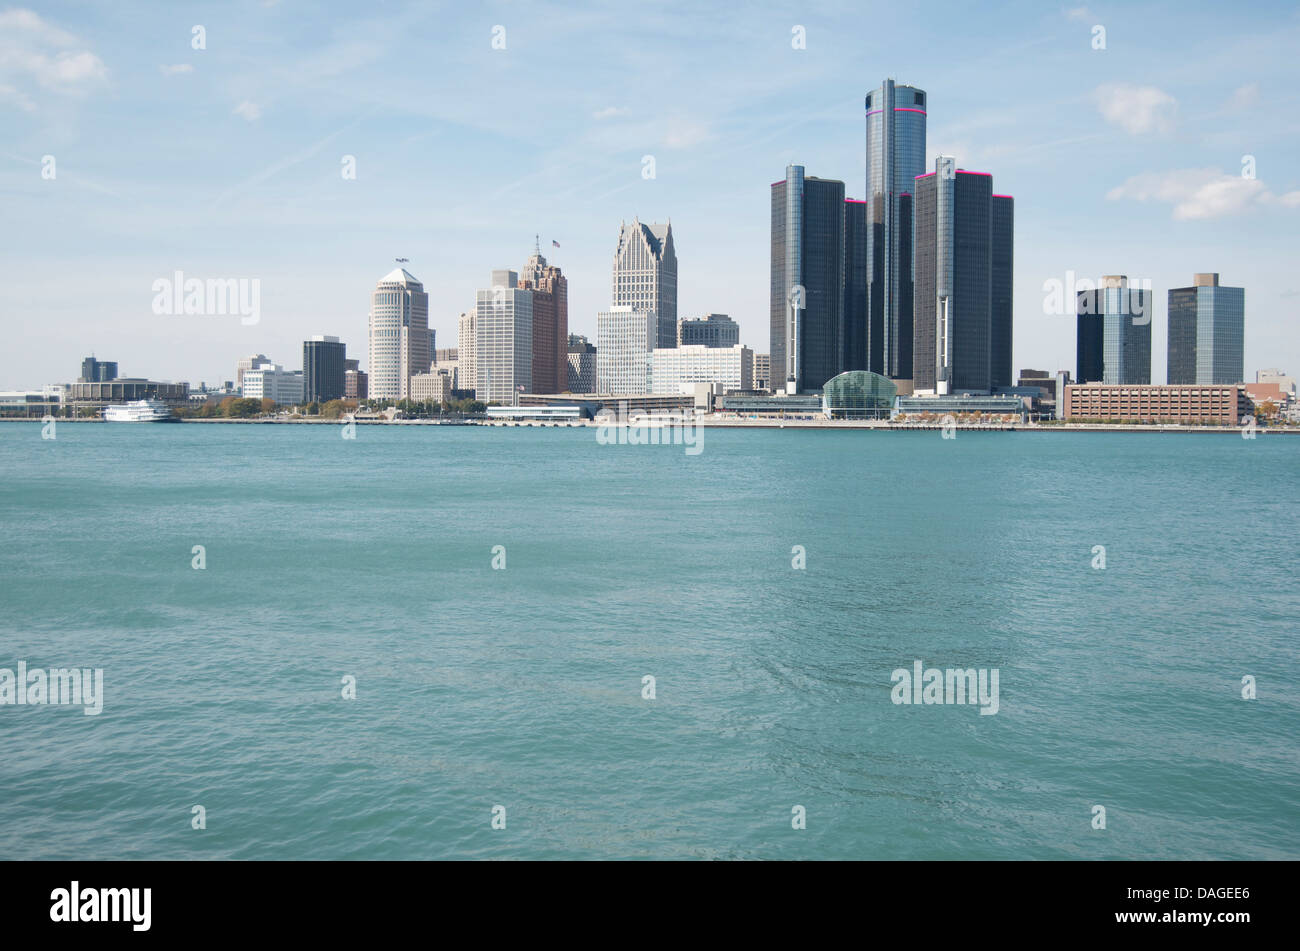 Ville de Detroit skyline prises à partir du Canada, de l'autre côté de la rivière Détroit. Banque D'Images